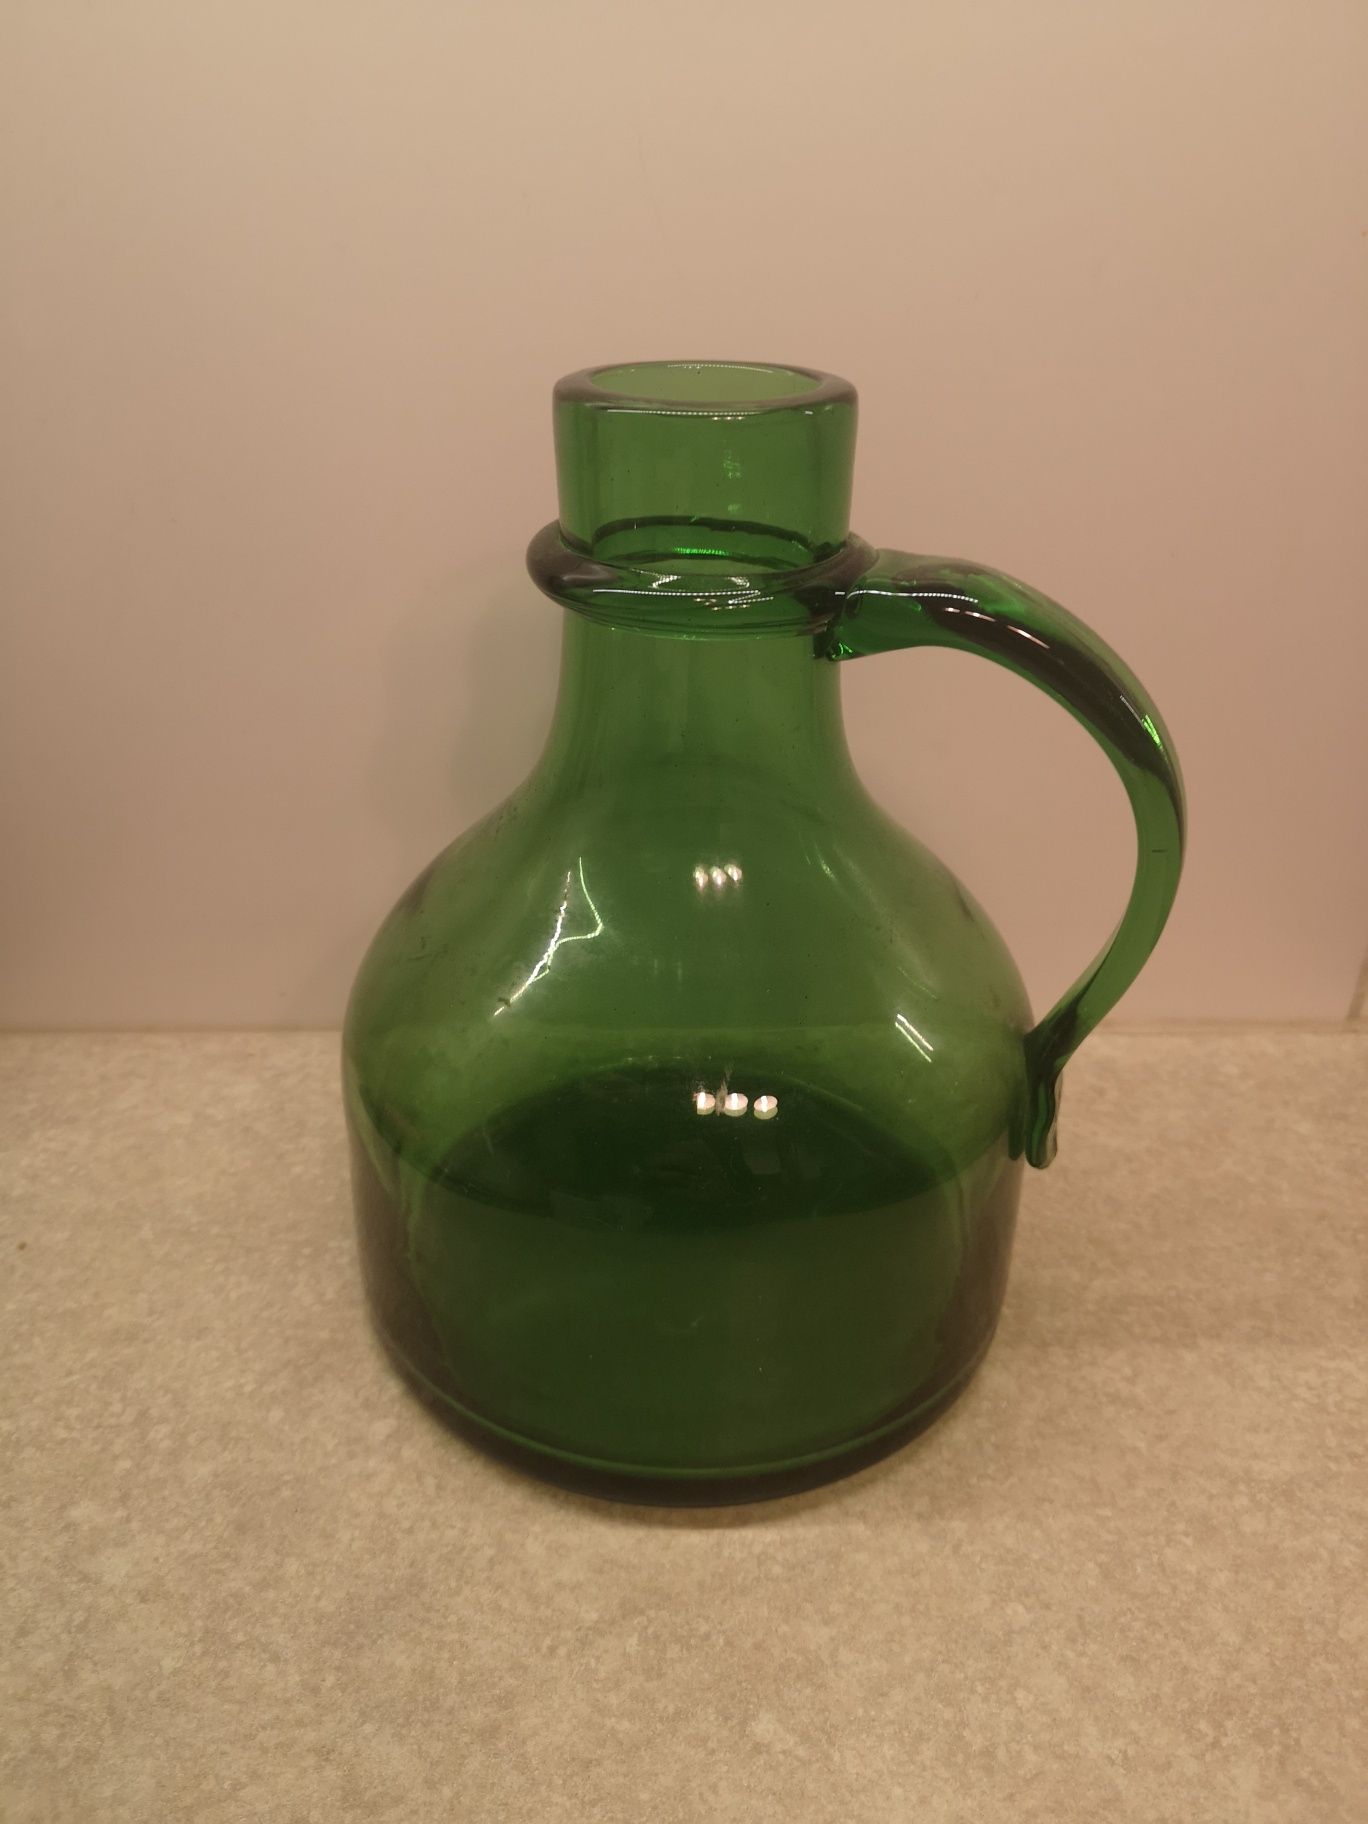 Stary wazon butelka zielona jedyna taka